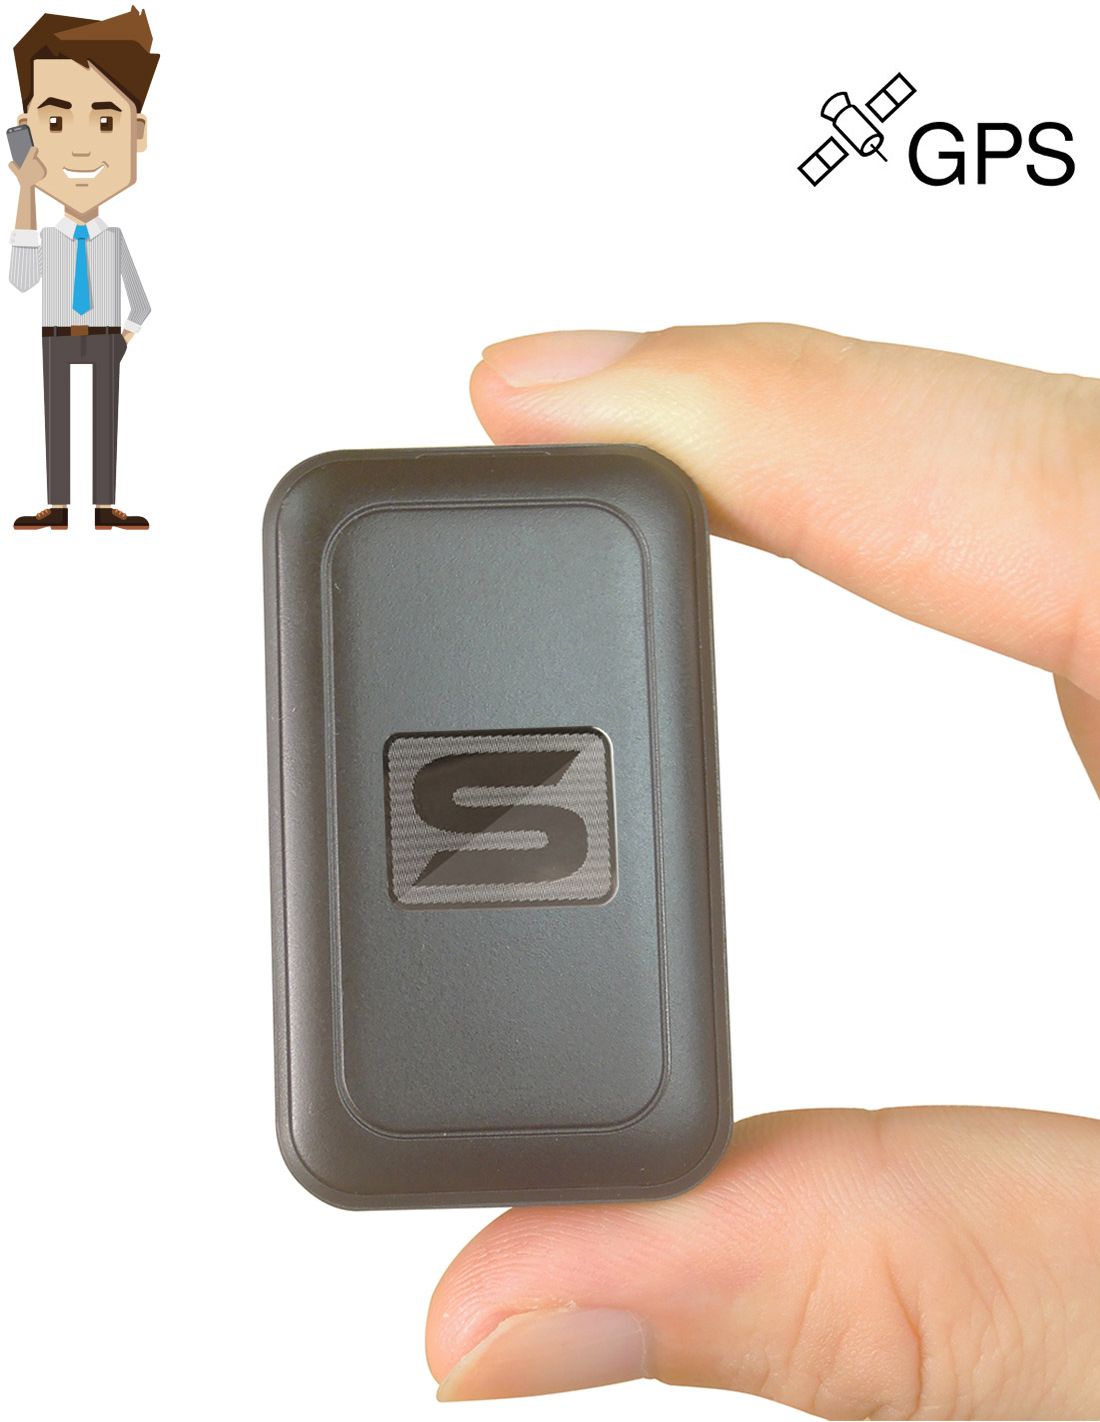 Mini micro espion - écouter en direct - Localisation GPS